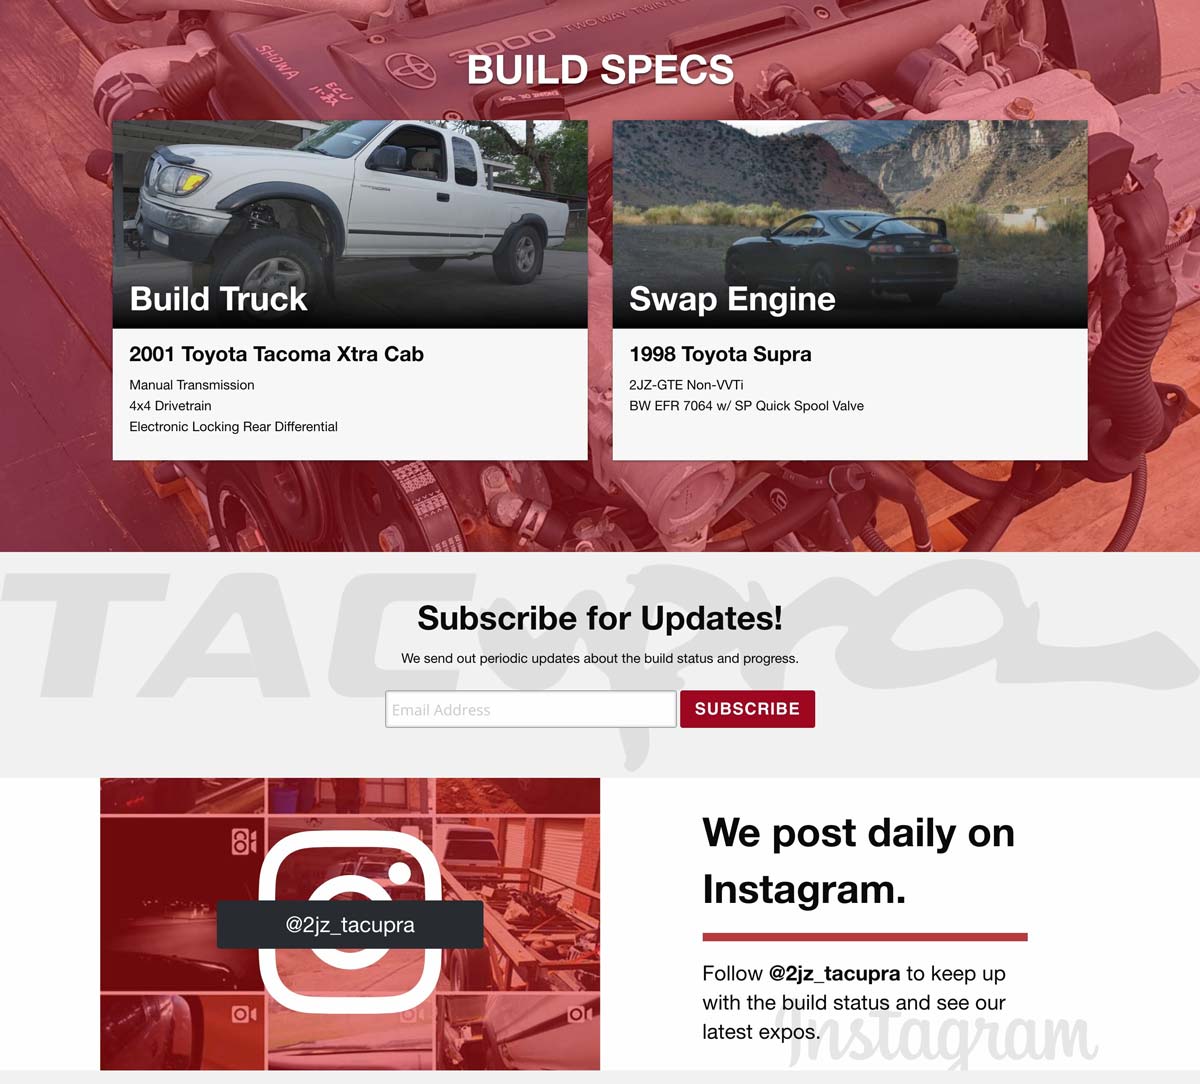 Tacupra Website Content Visible